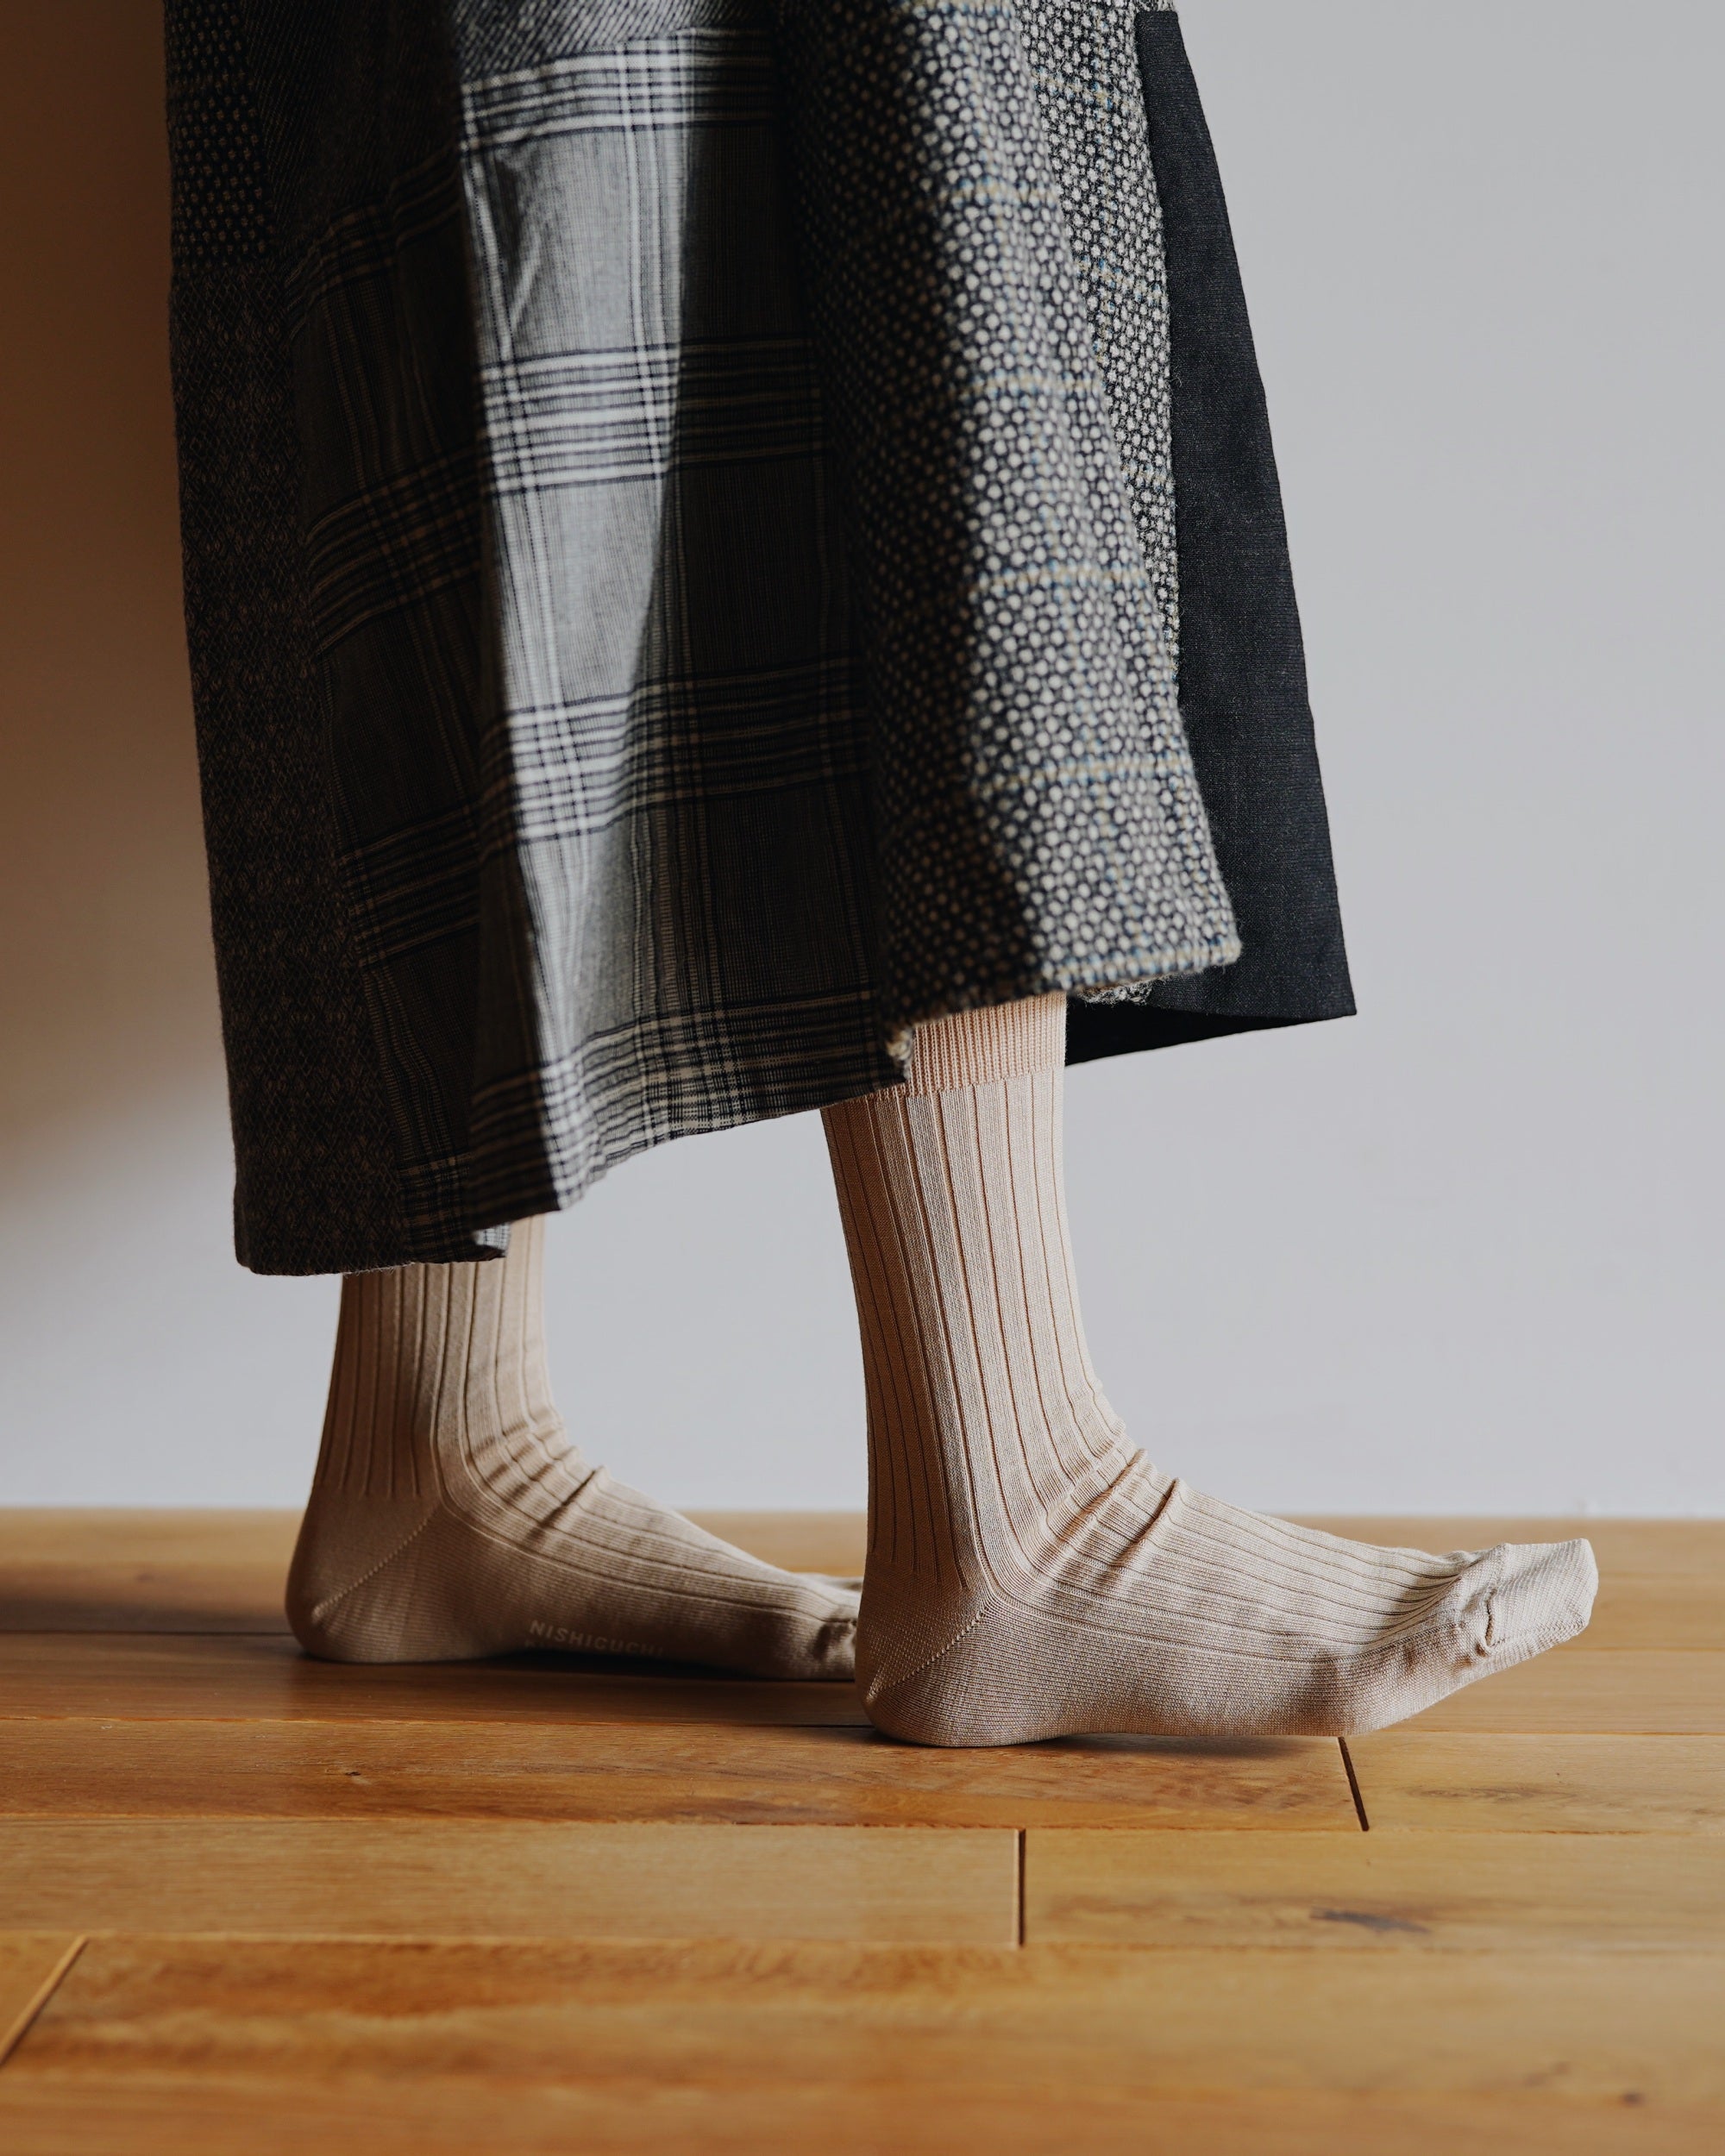 nishiguchi kutsushita : silk cotton ribbed socks